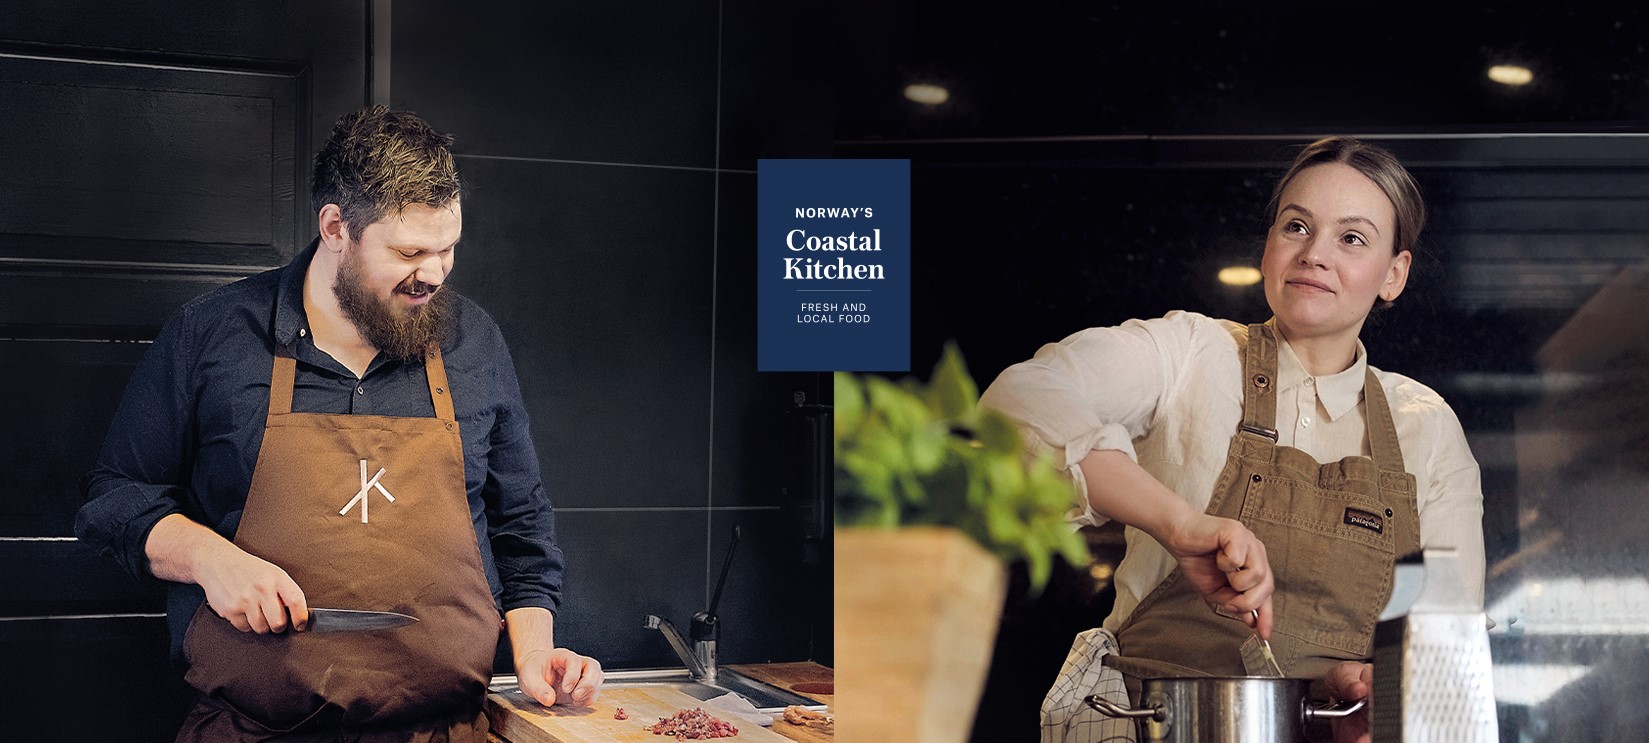 Våre to kulinariske ambassadører Ellingsen og Nässander på kjøkkenet.